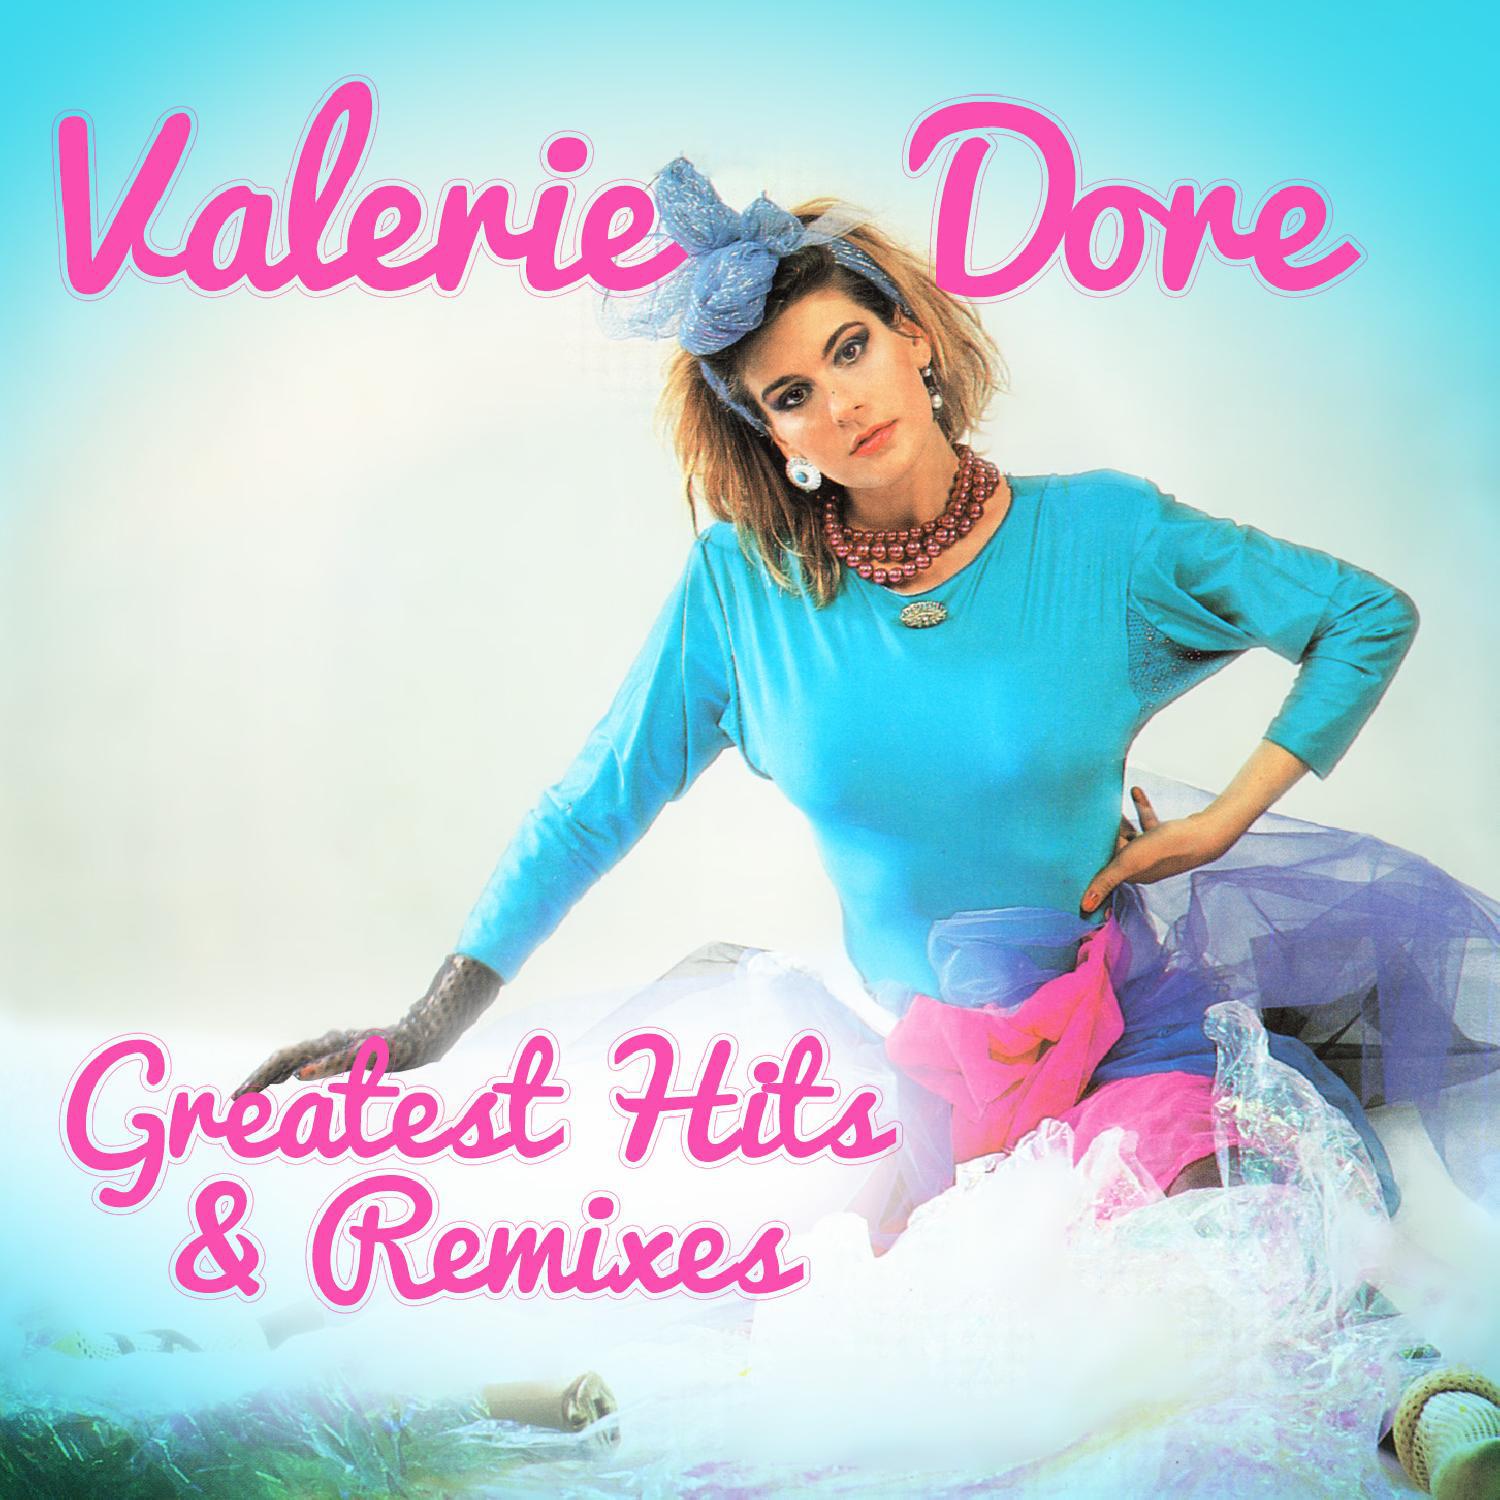 Valerie Dore - The Night (Original Mix)